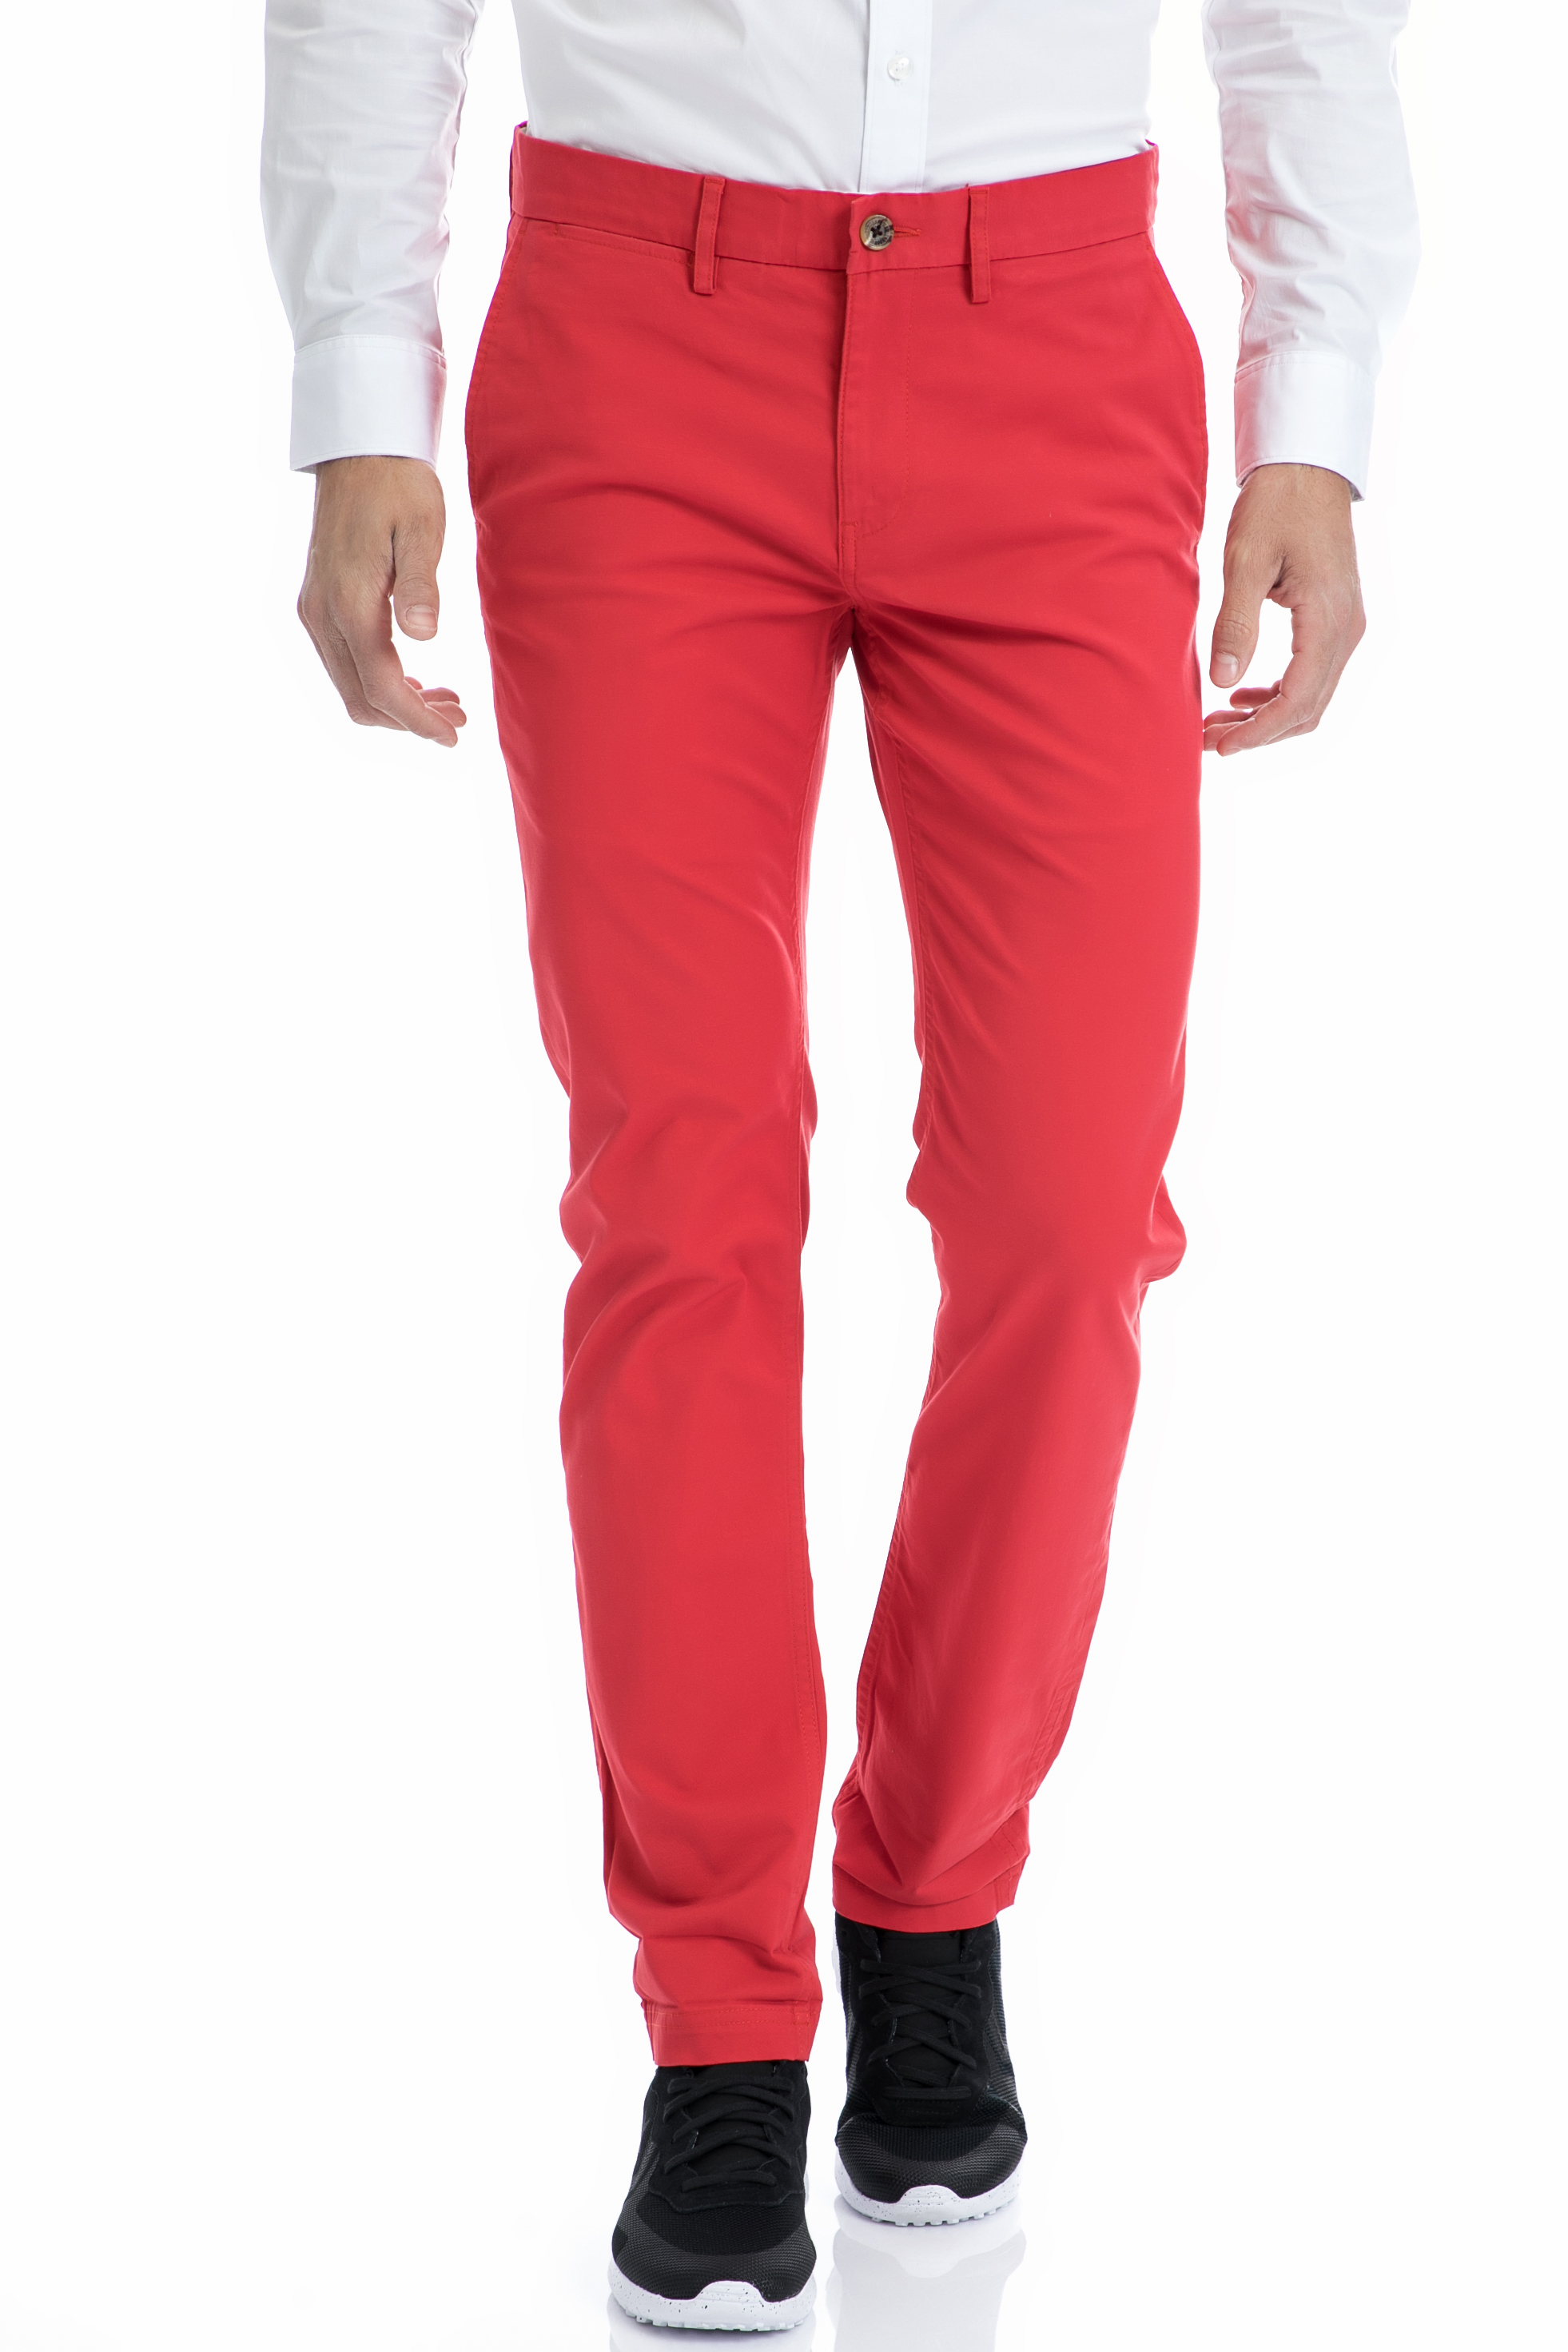 Ανδρικά/Ρούχα/Παντελόνια/Chinos BEN SHERMAN - Ανδρικό παντελόνι Ben Sherman κόκκινο